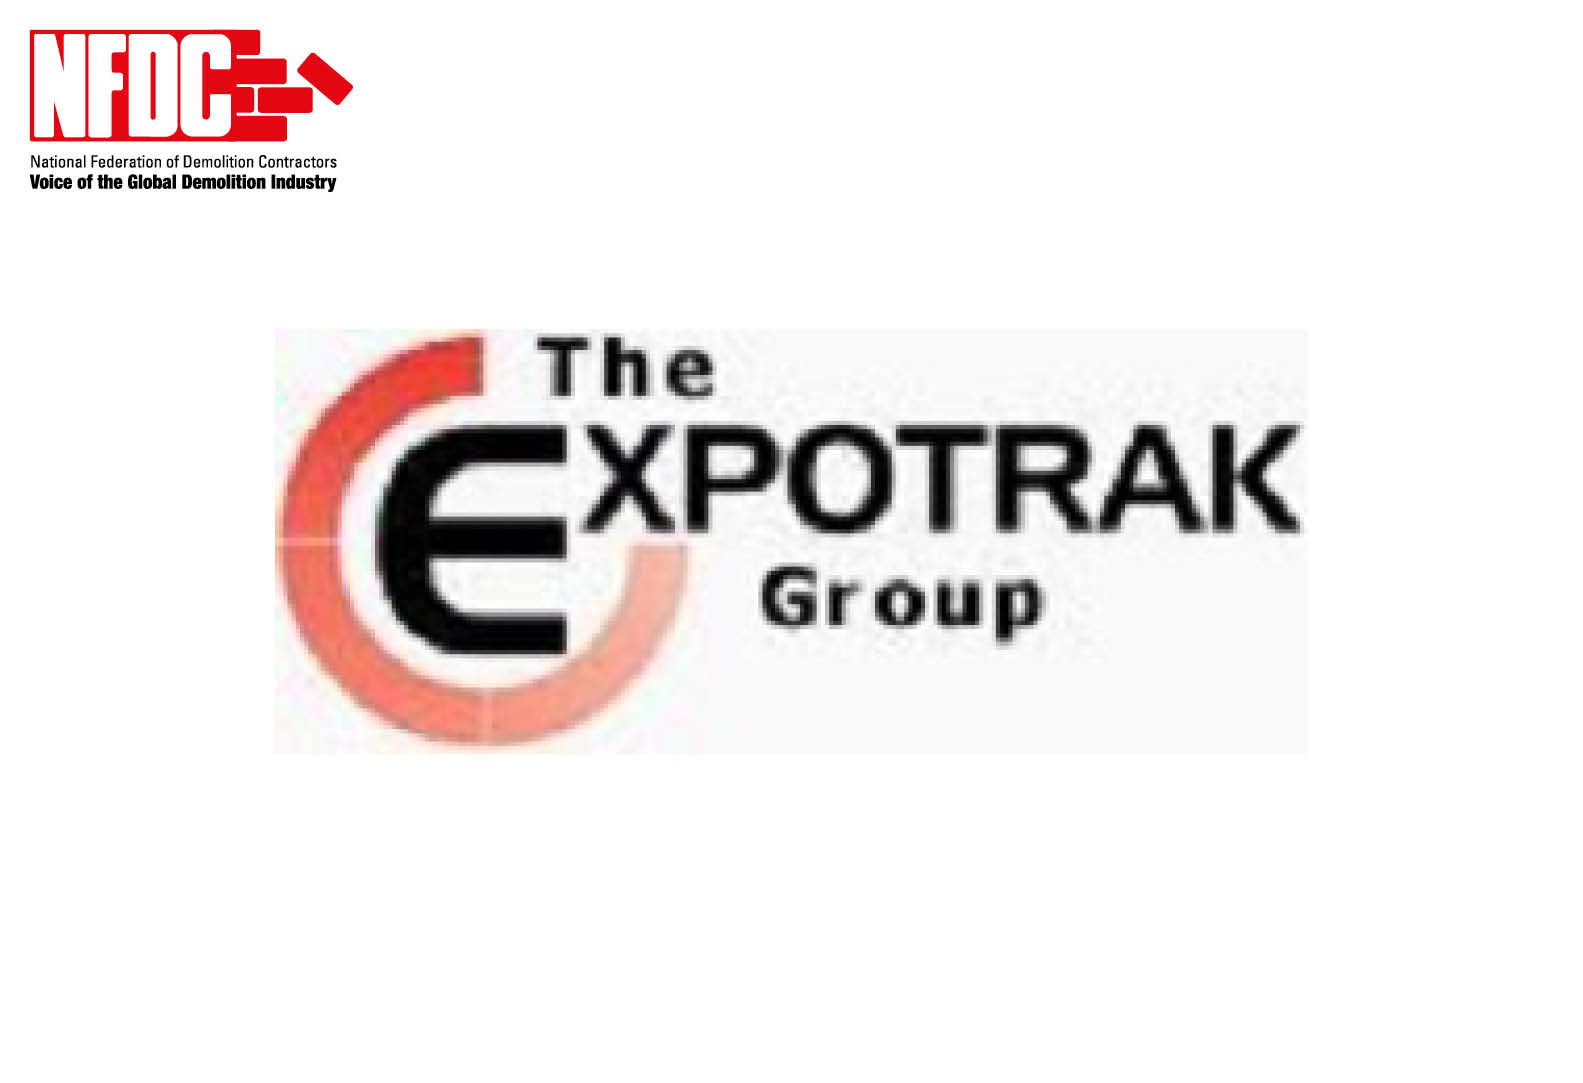 Expotrak Ltd